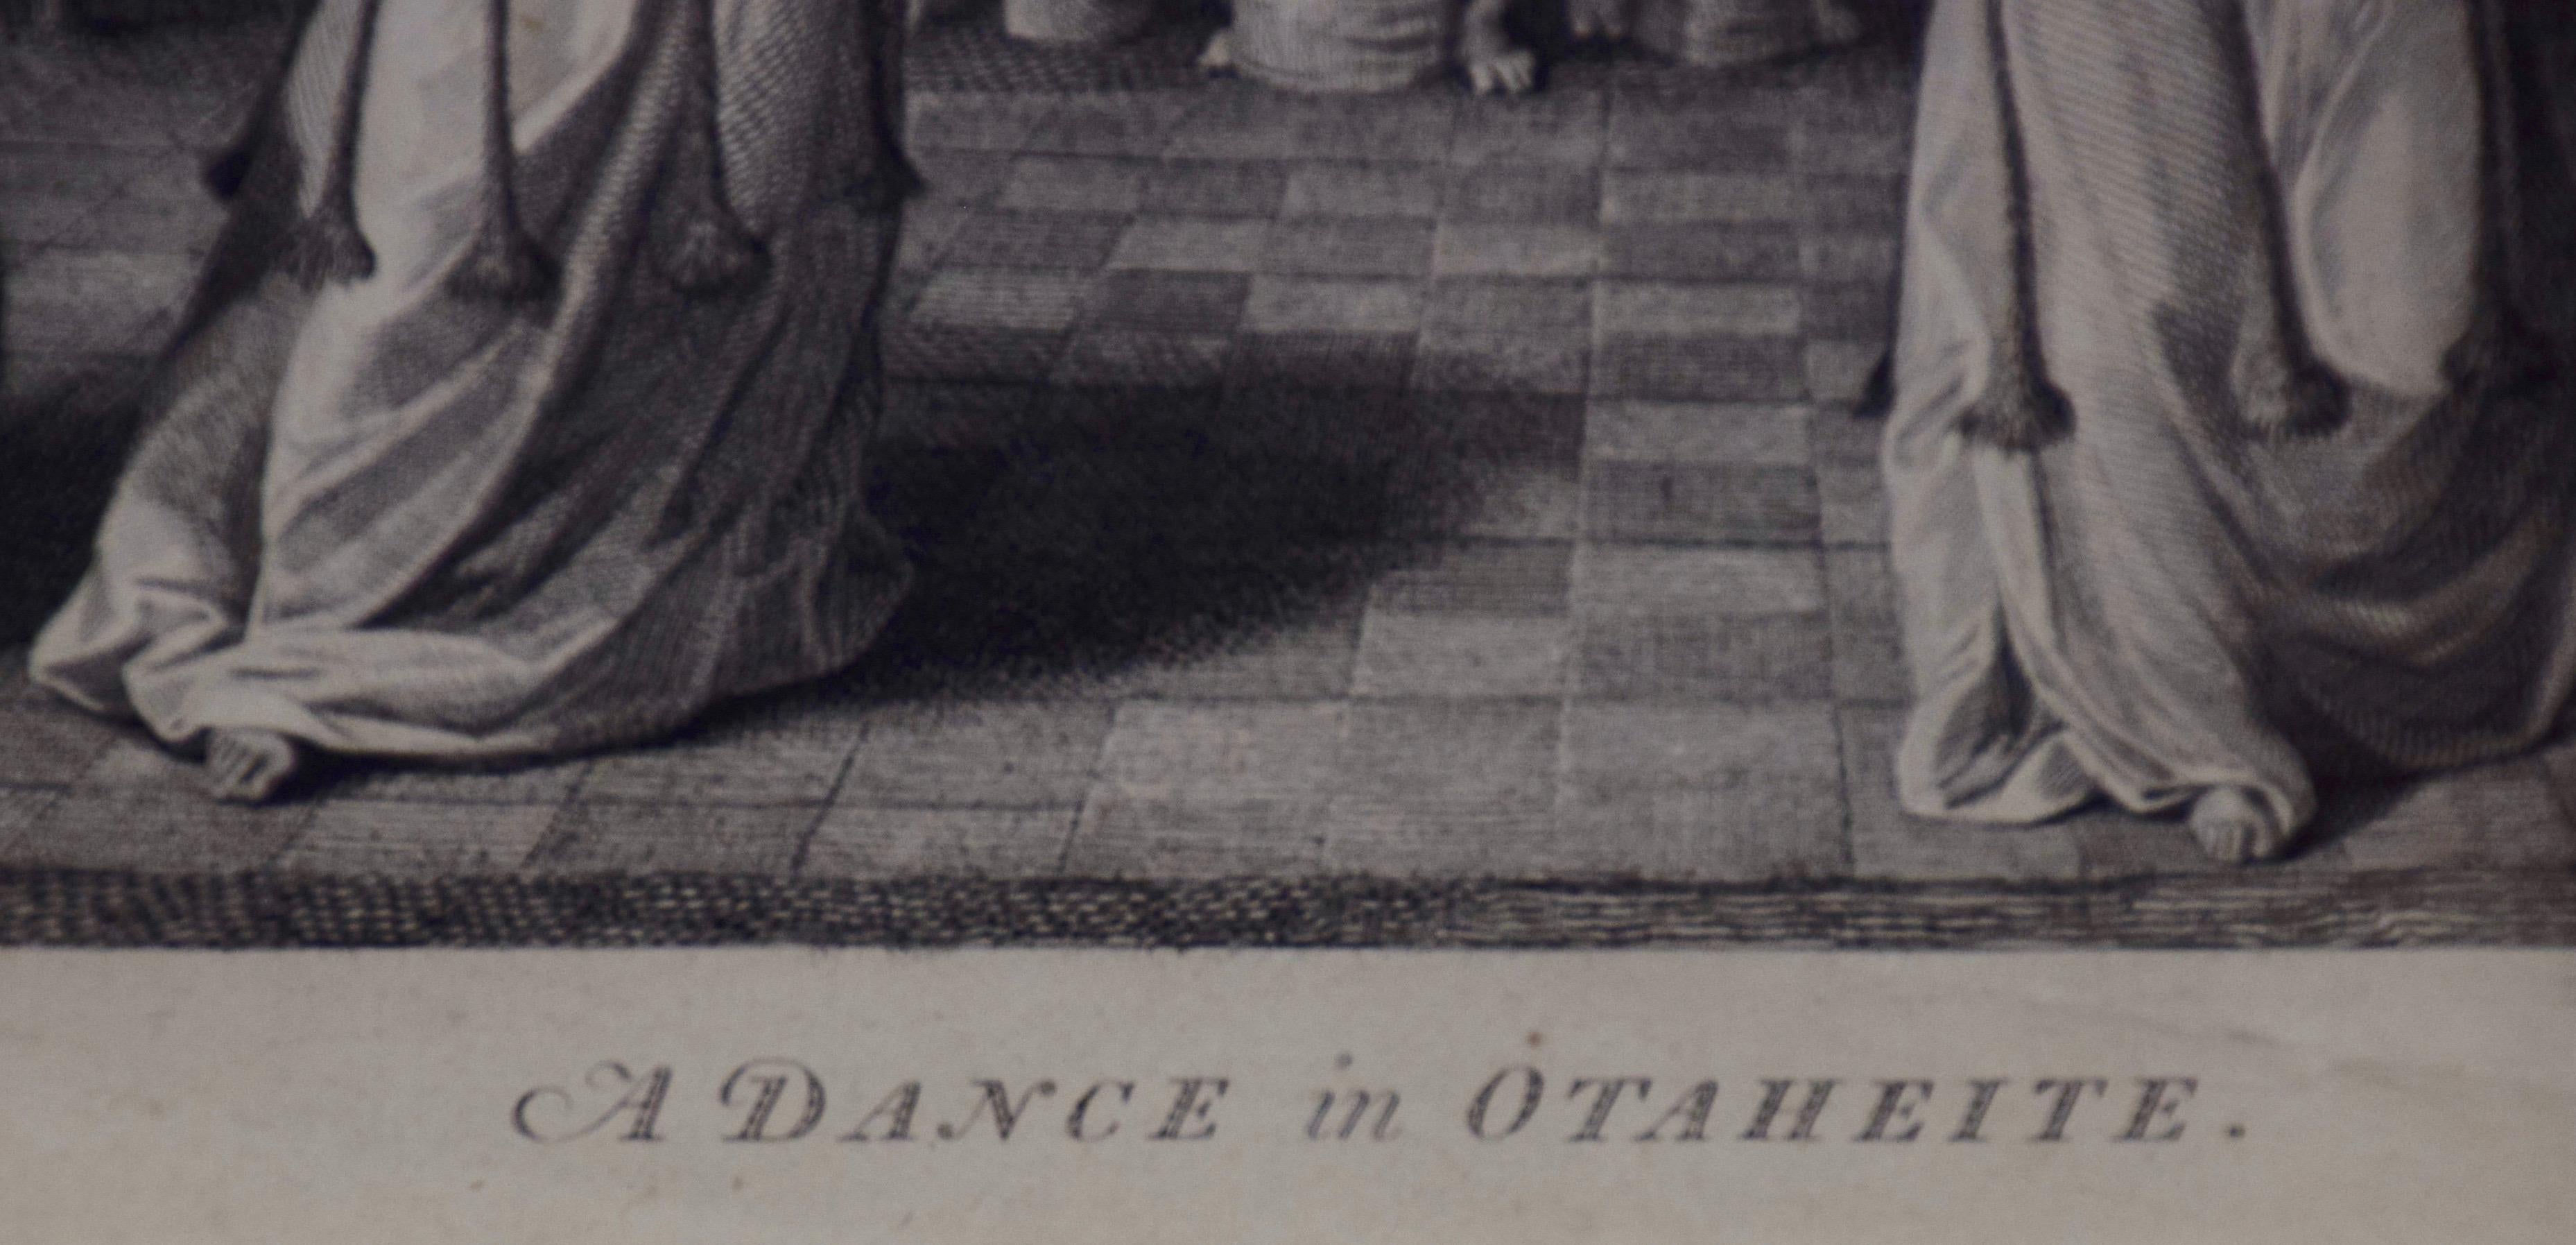 dance of tahiti